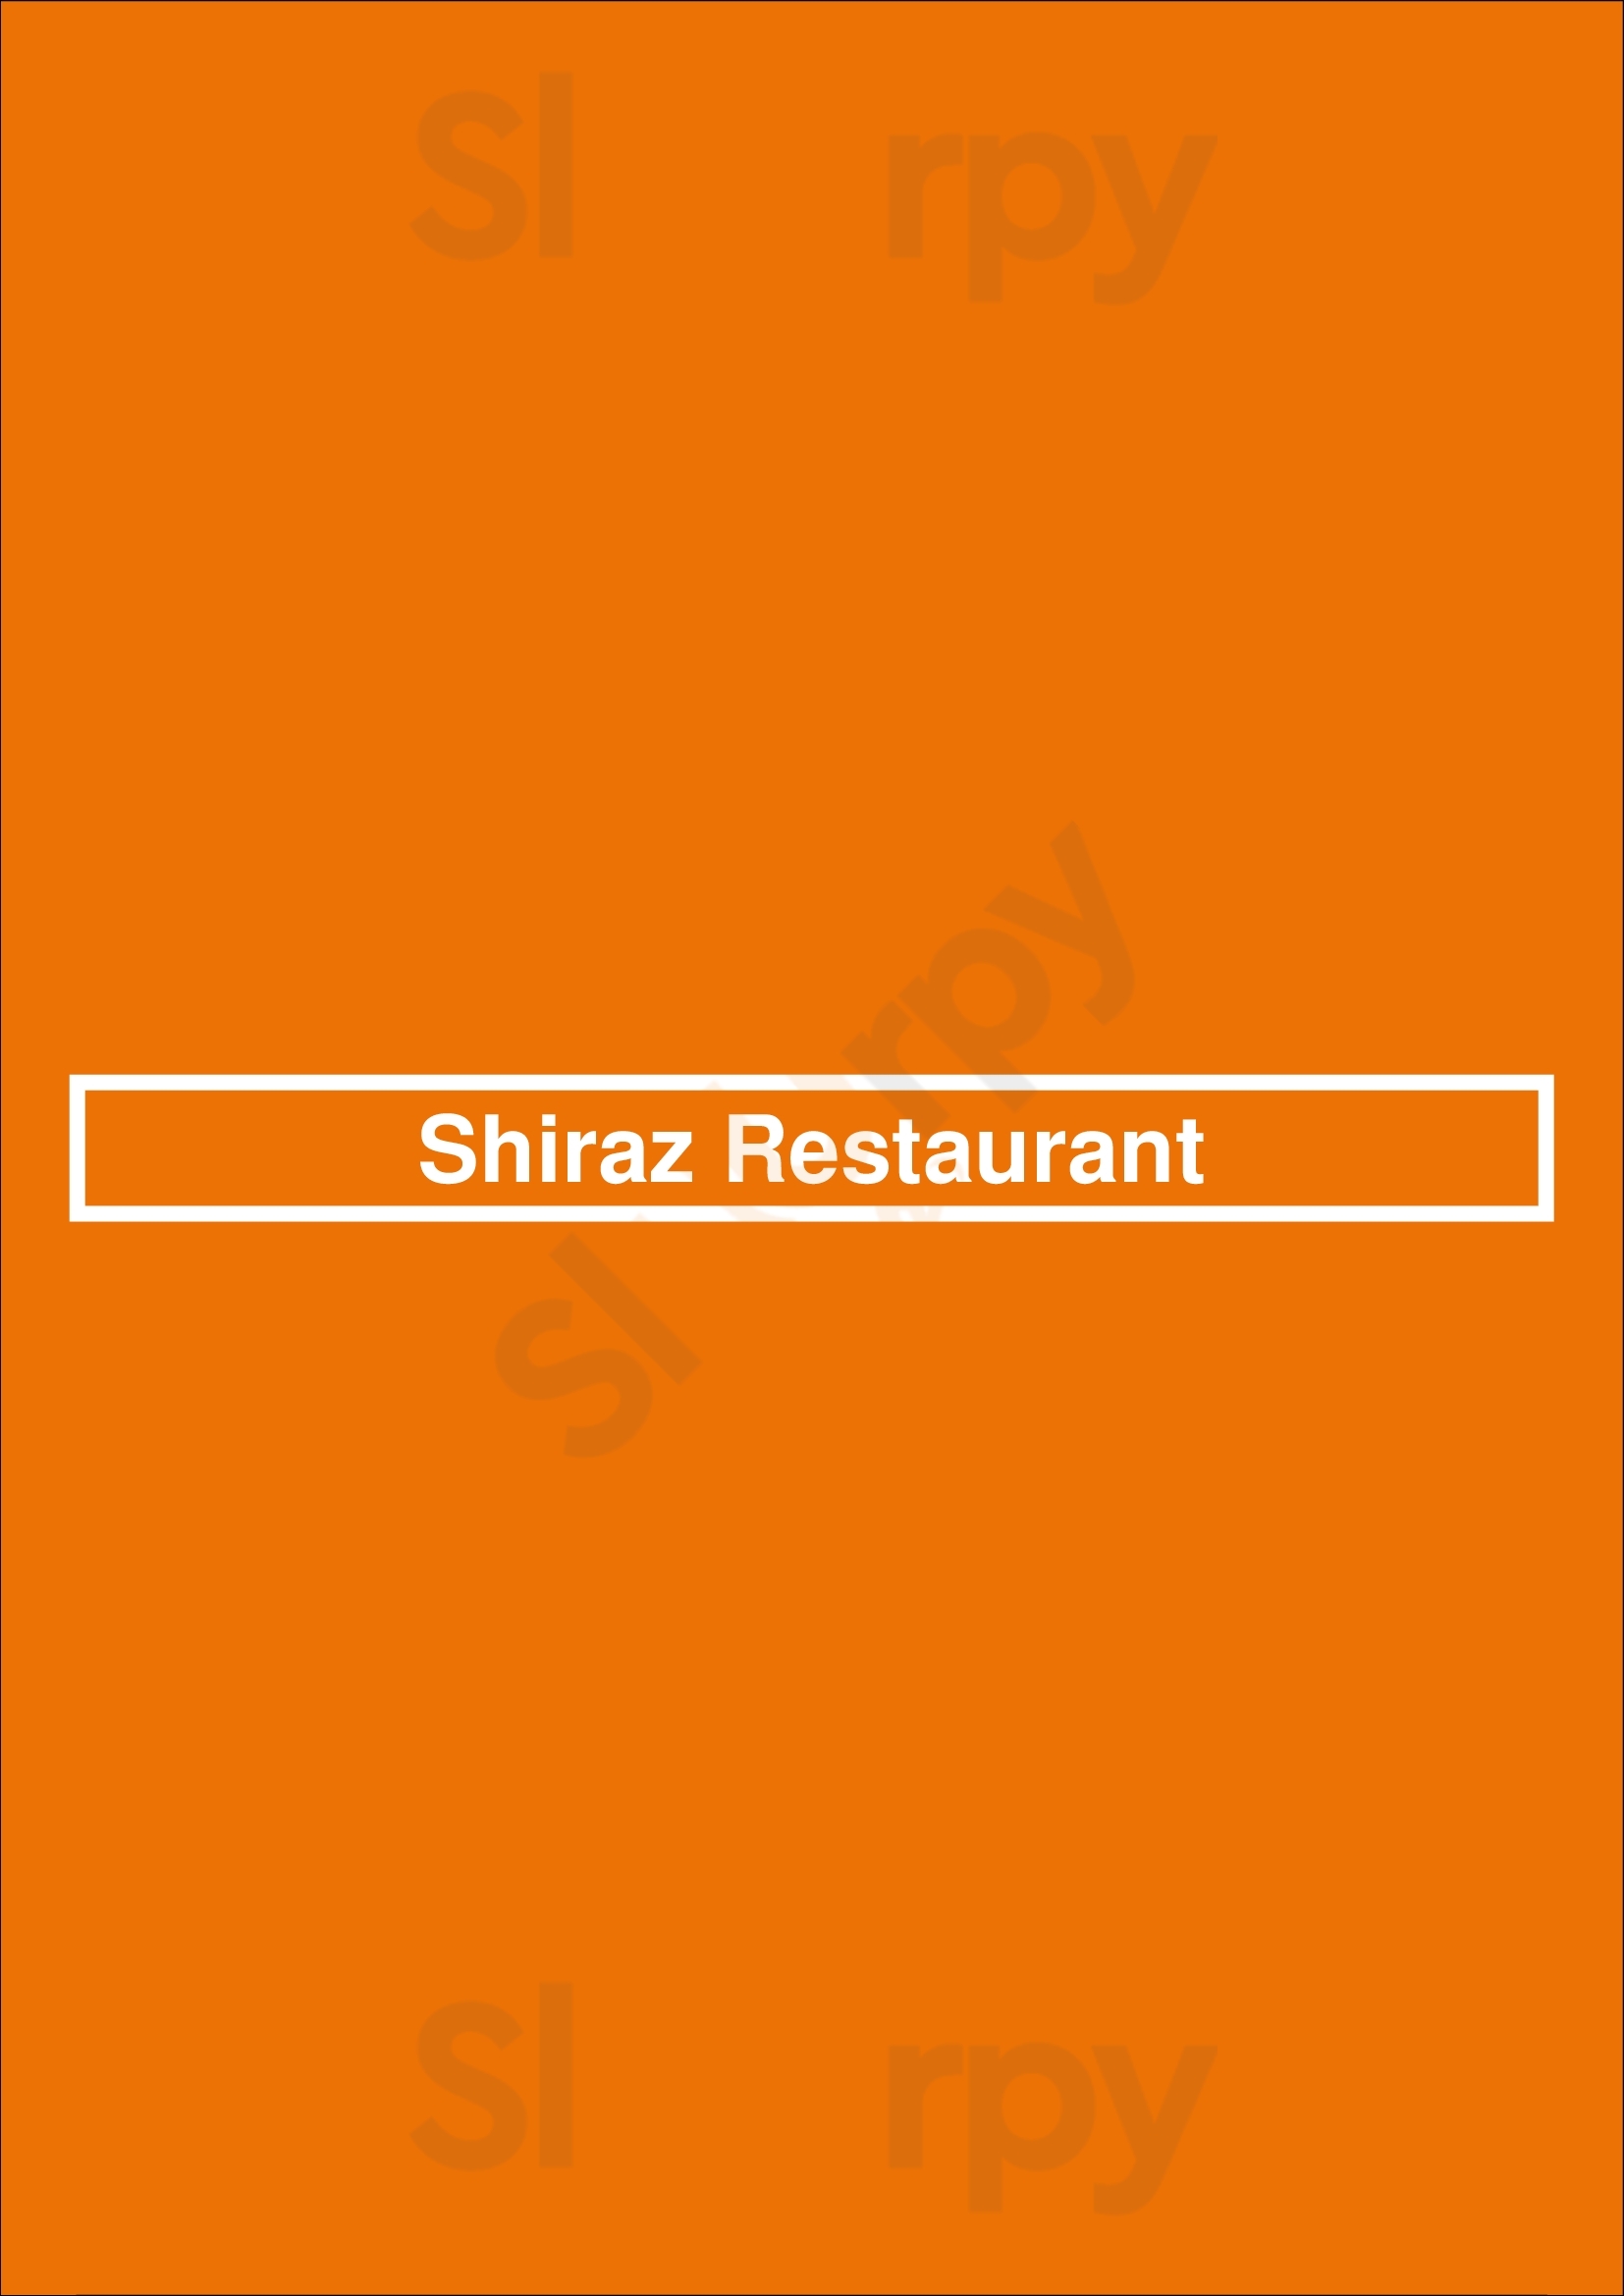 Shiraz Restaurant Swansea Menu - 1